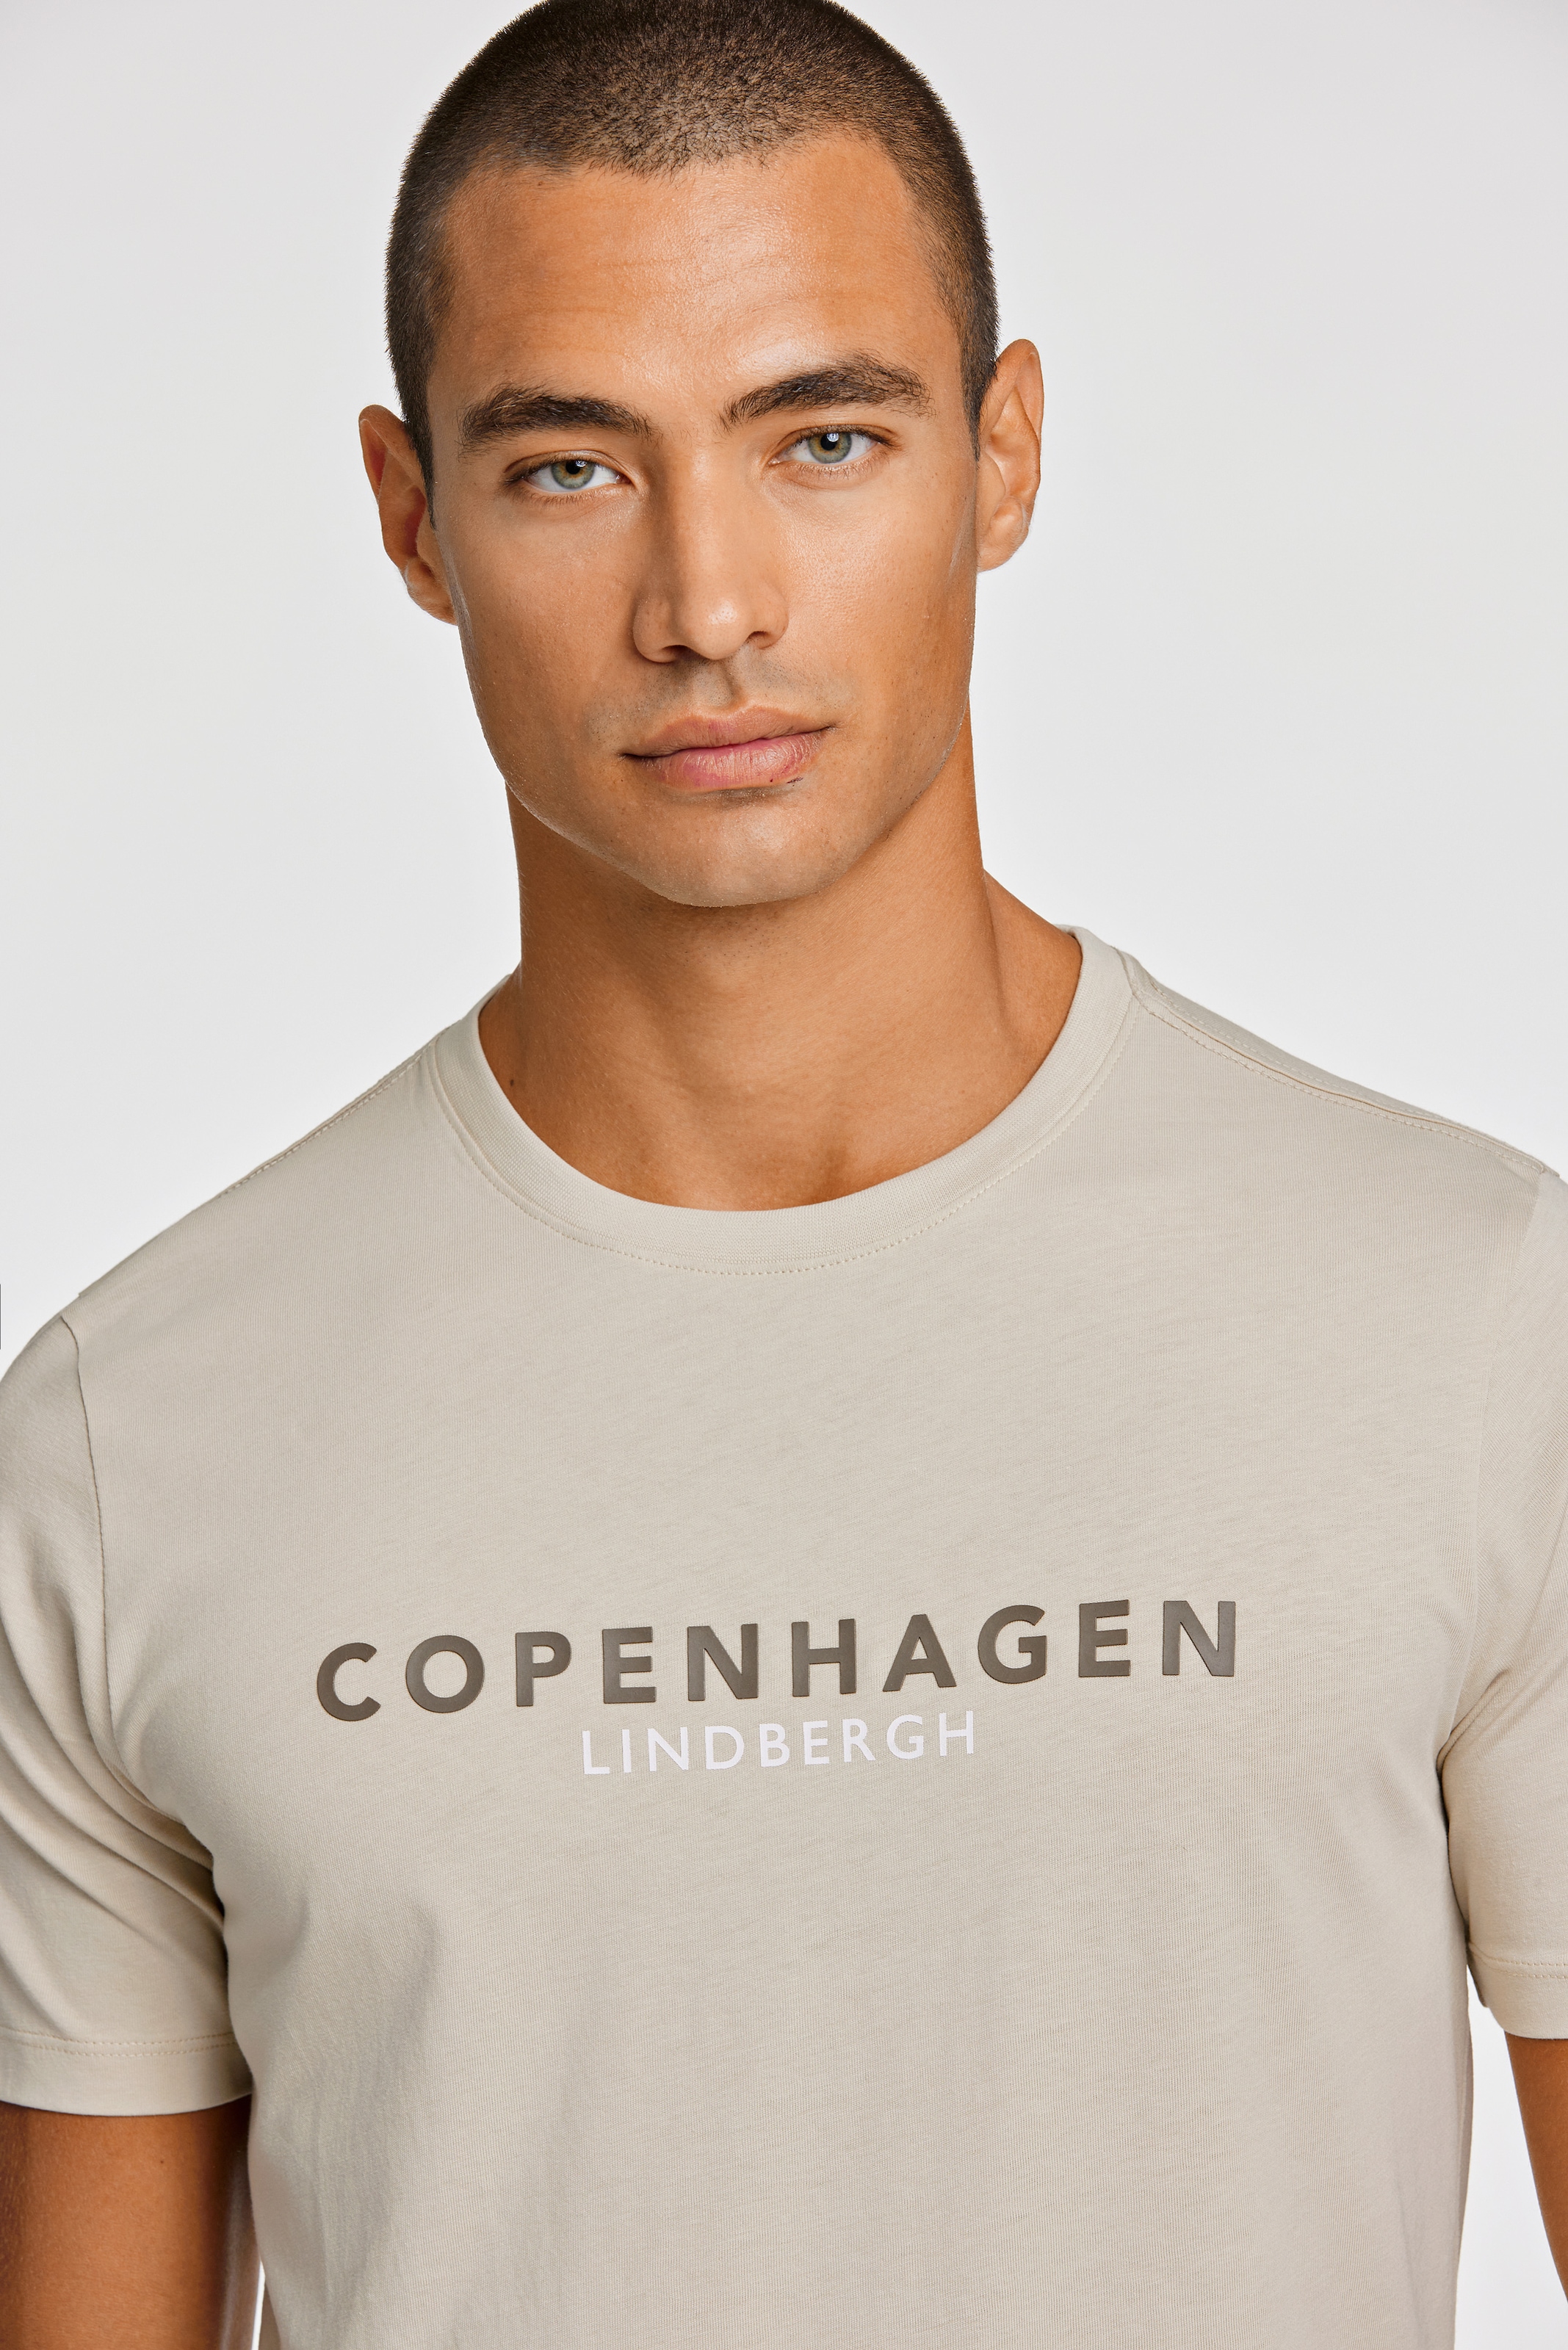 LINDBERGH T-Shirt, mit Logo und Rundhalsausschnitt